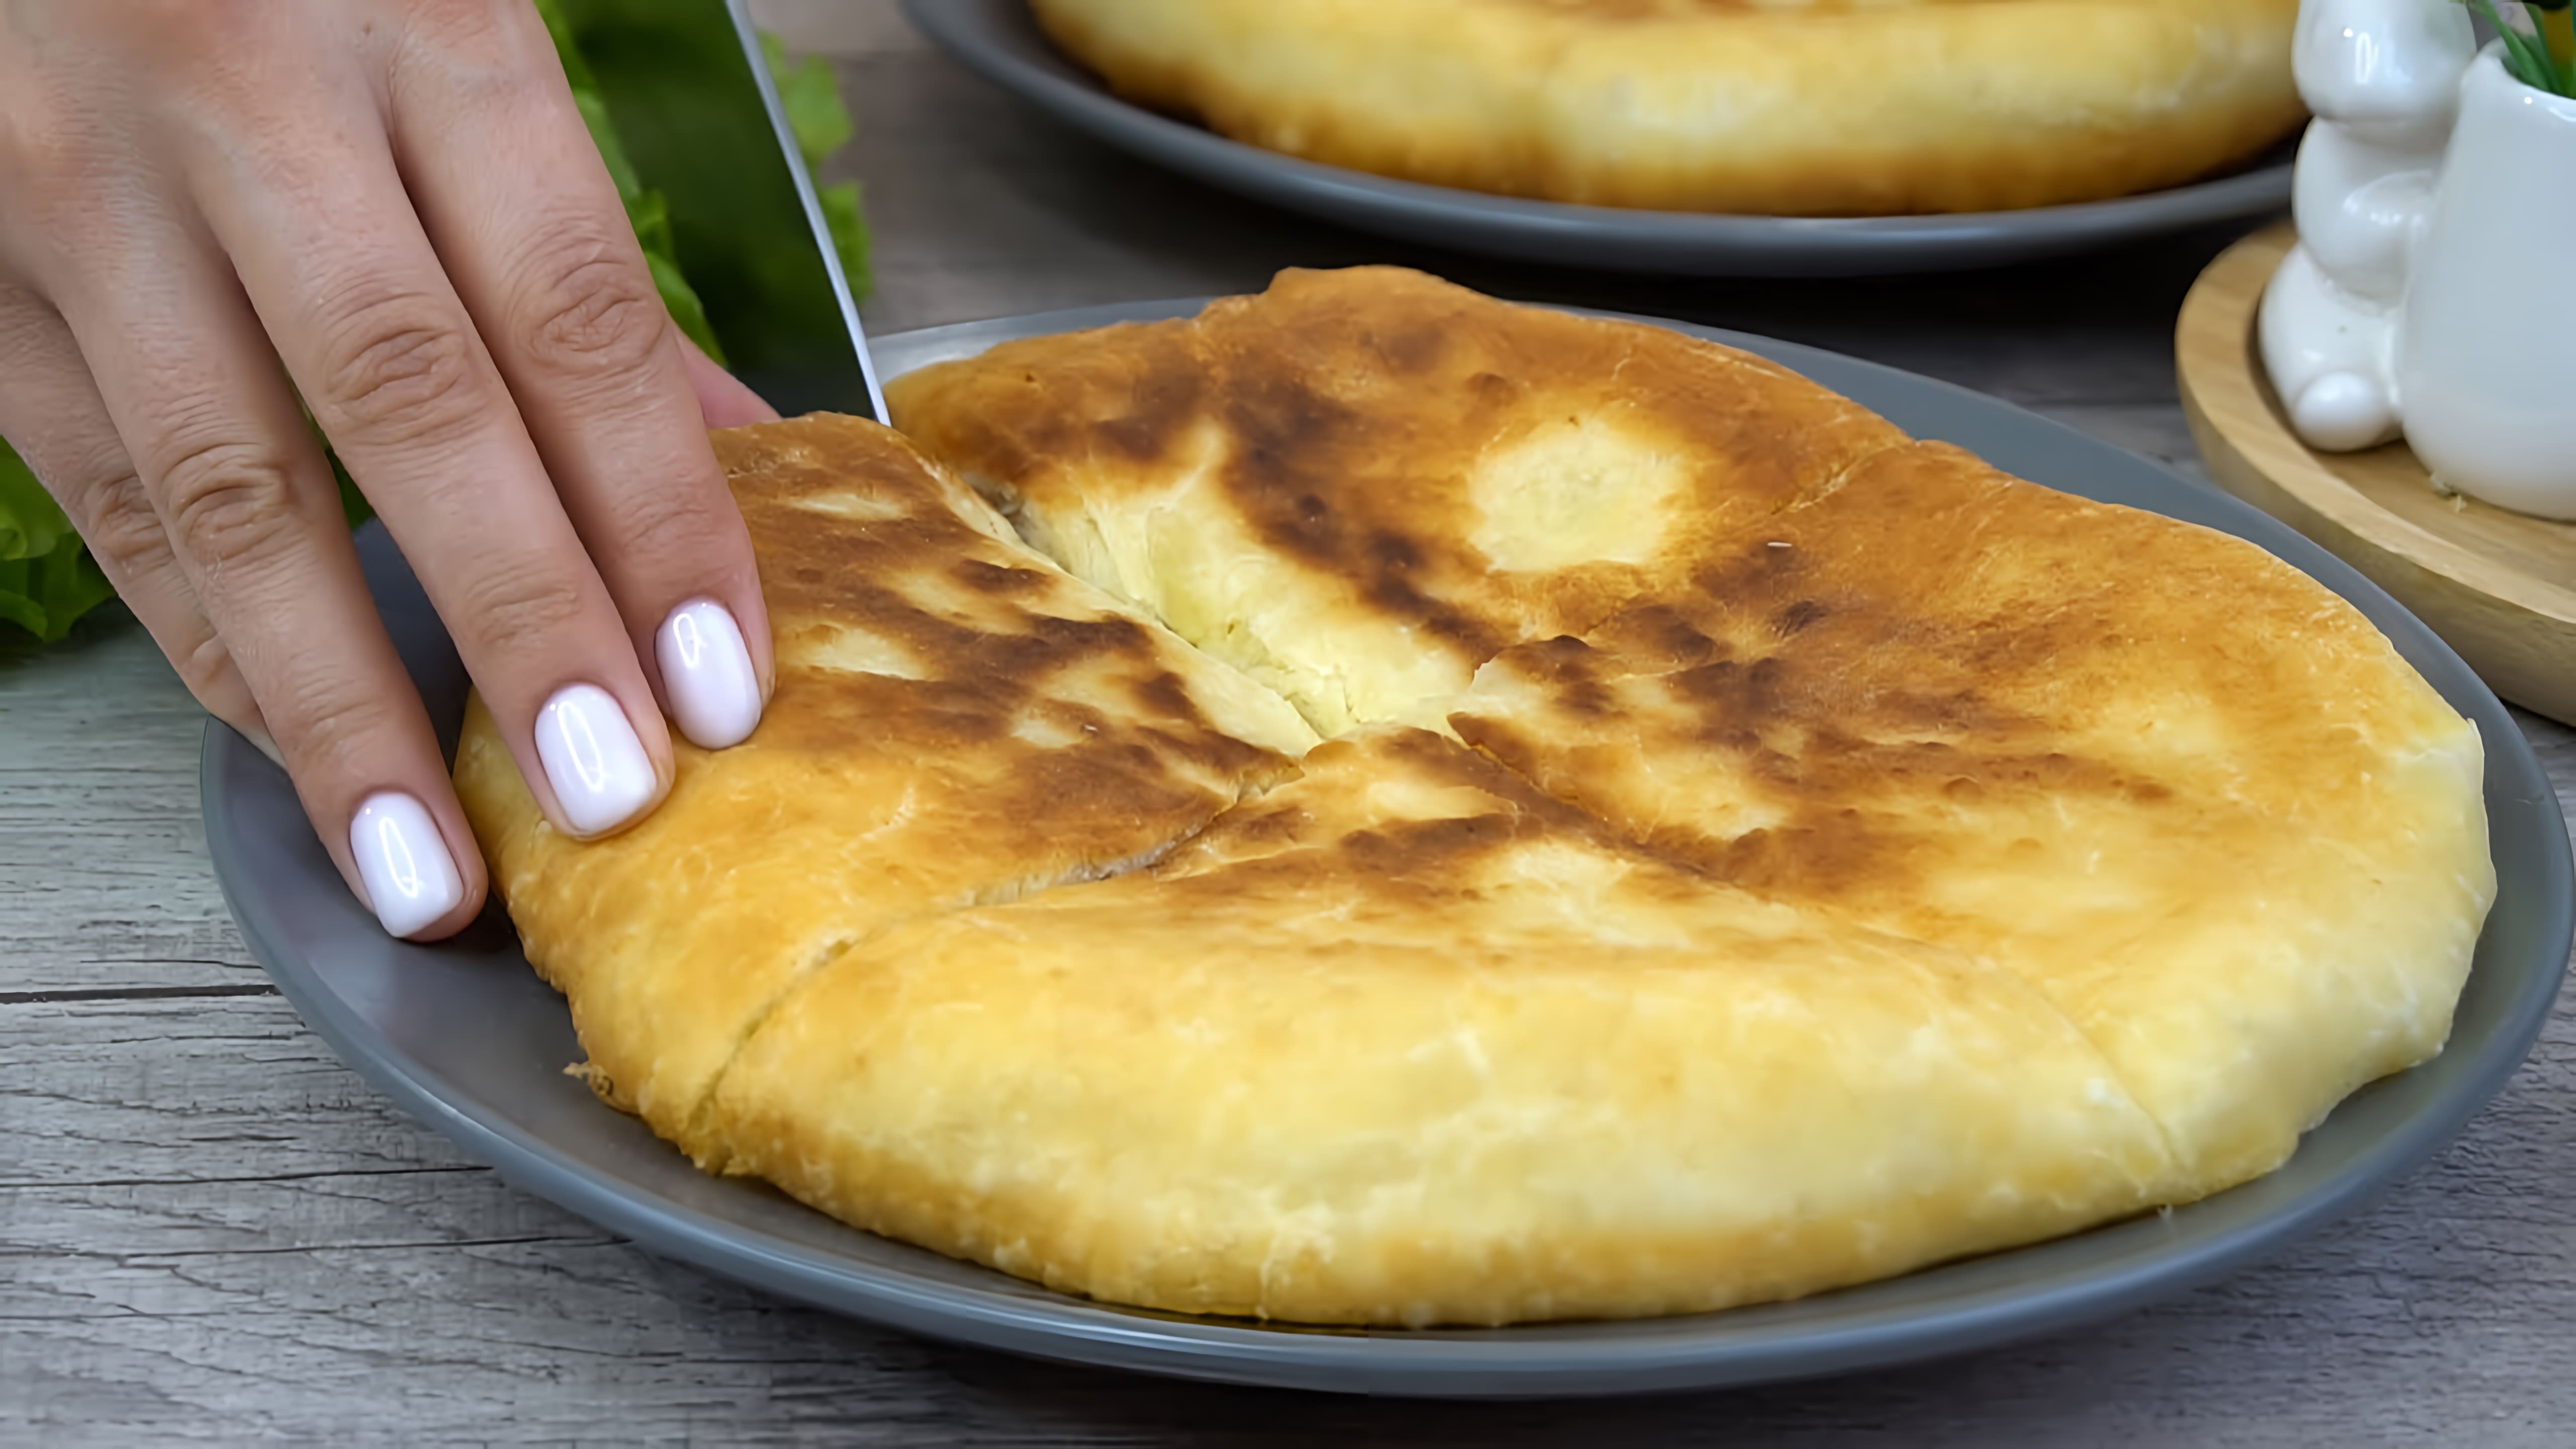 В этом видео демонстрируется рецепт пирога "Пятиминутка", который готовится на сковороде или в духовке